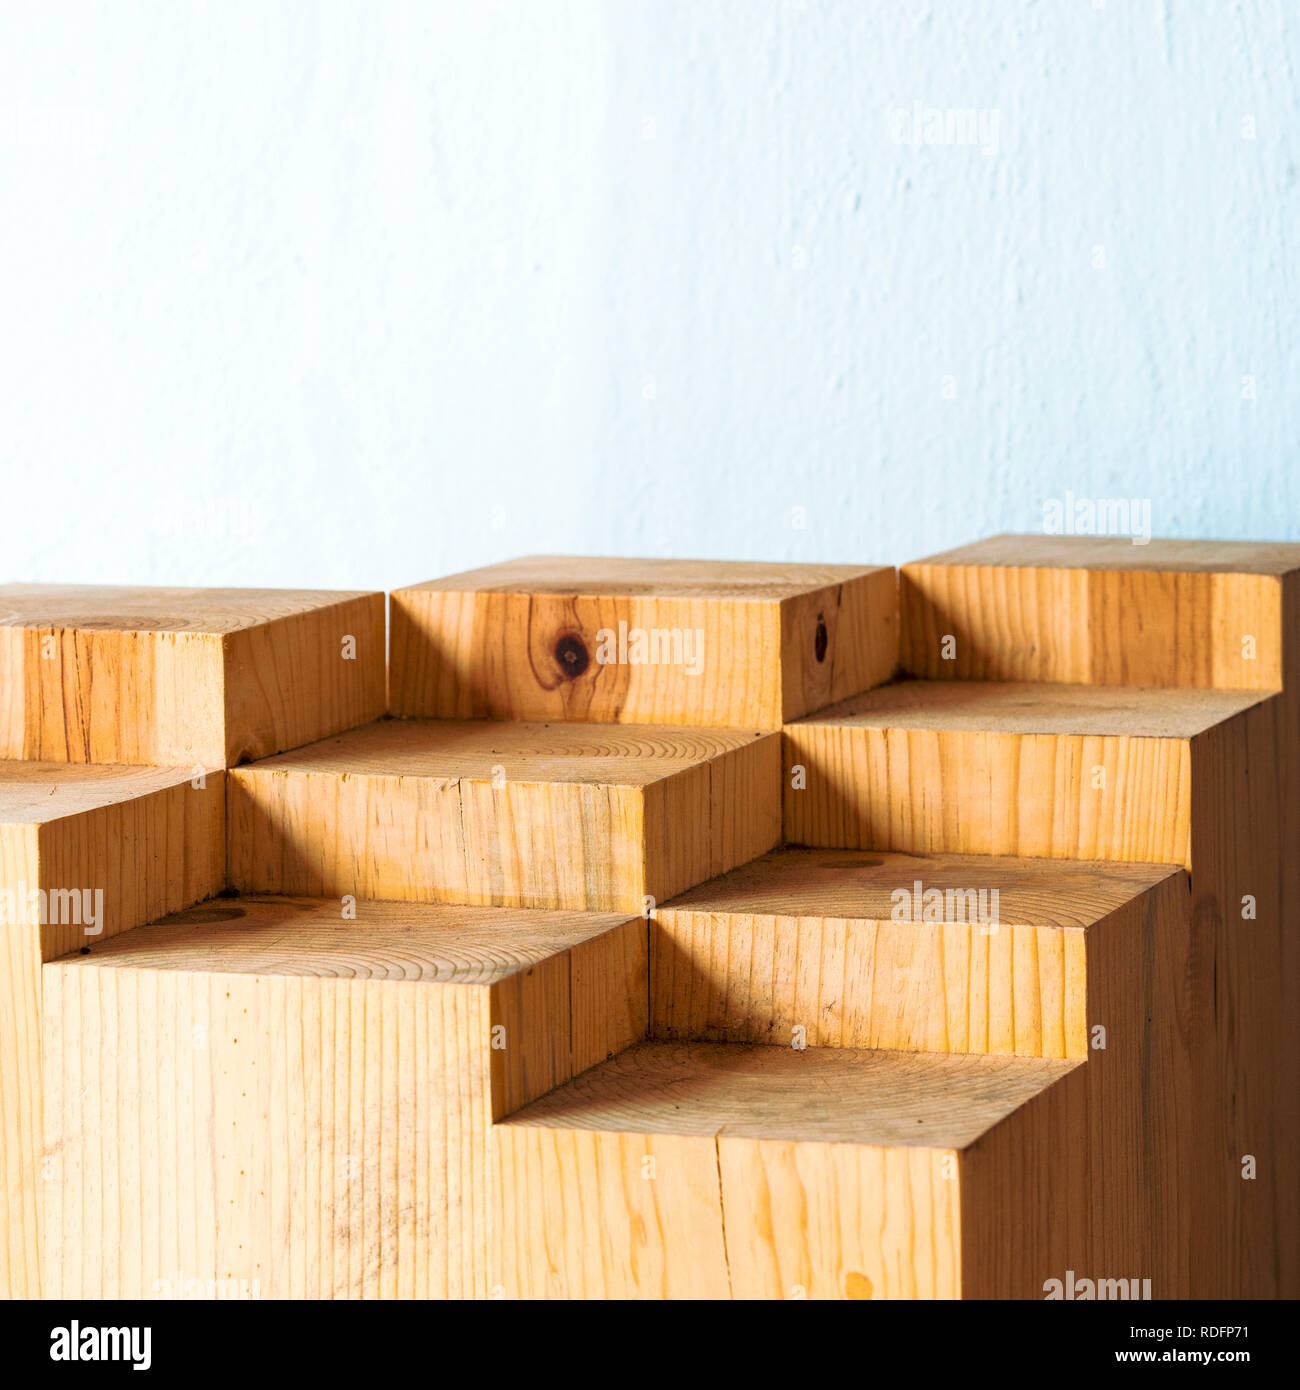 Geometrische Formen in abstrakte Bausteine aus Holz mit Kopie Raum  Stockfotografie - Alamy